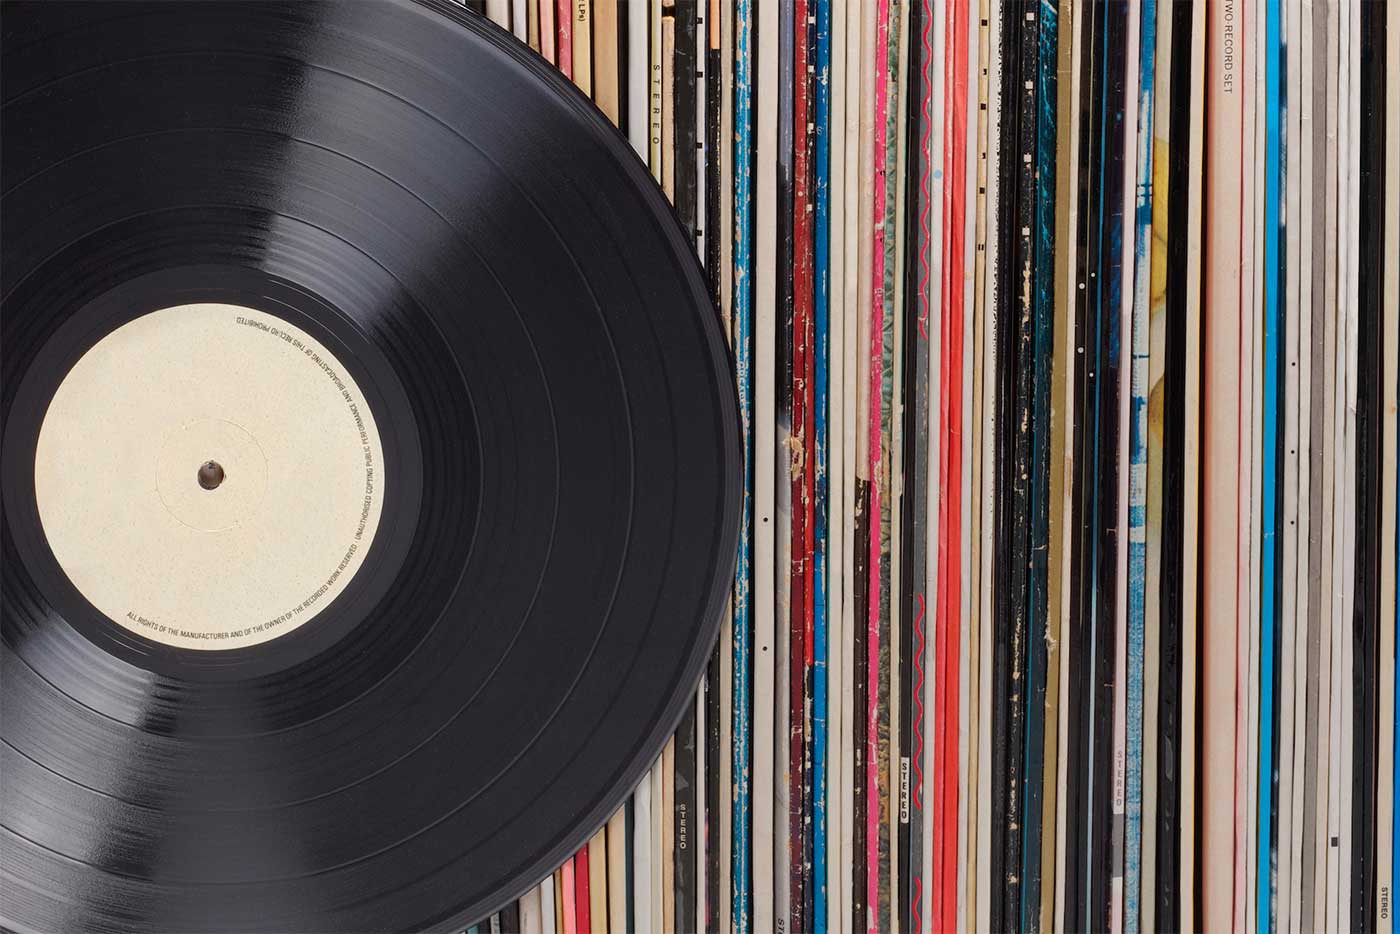 Por primera vez desde 1986, los vinilos vendieron más que los CDs en 2019